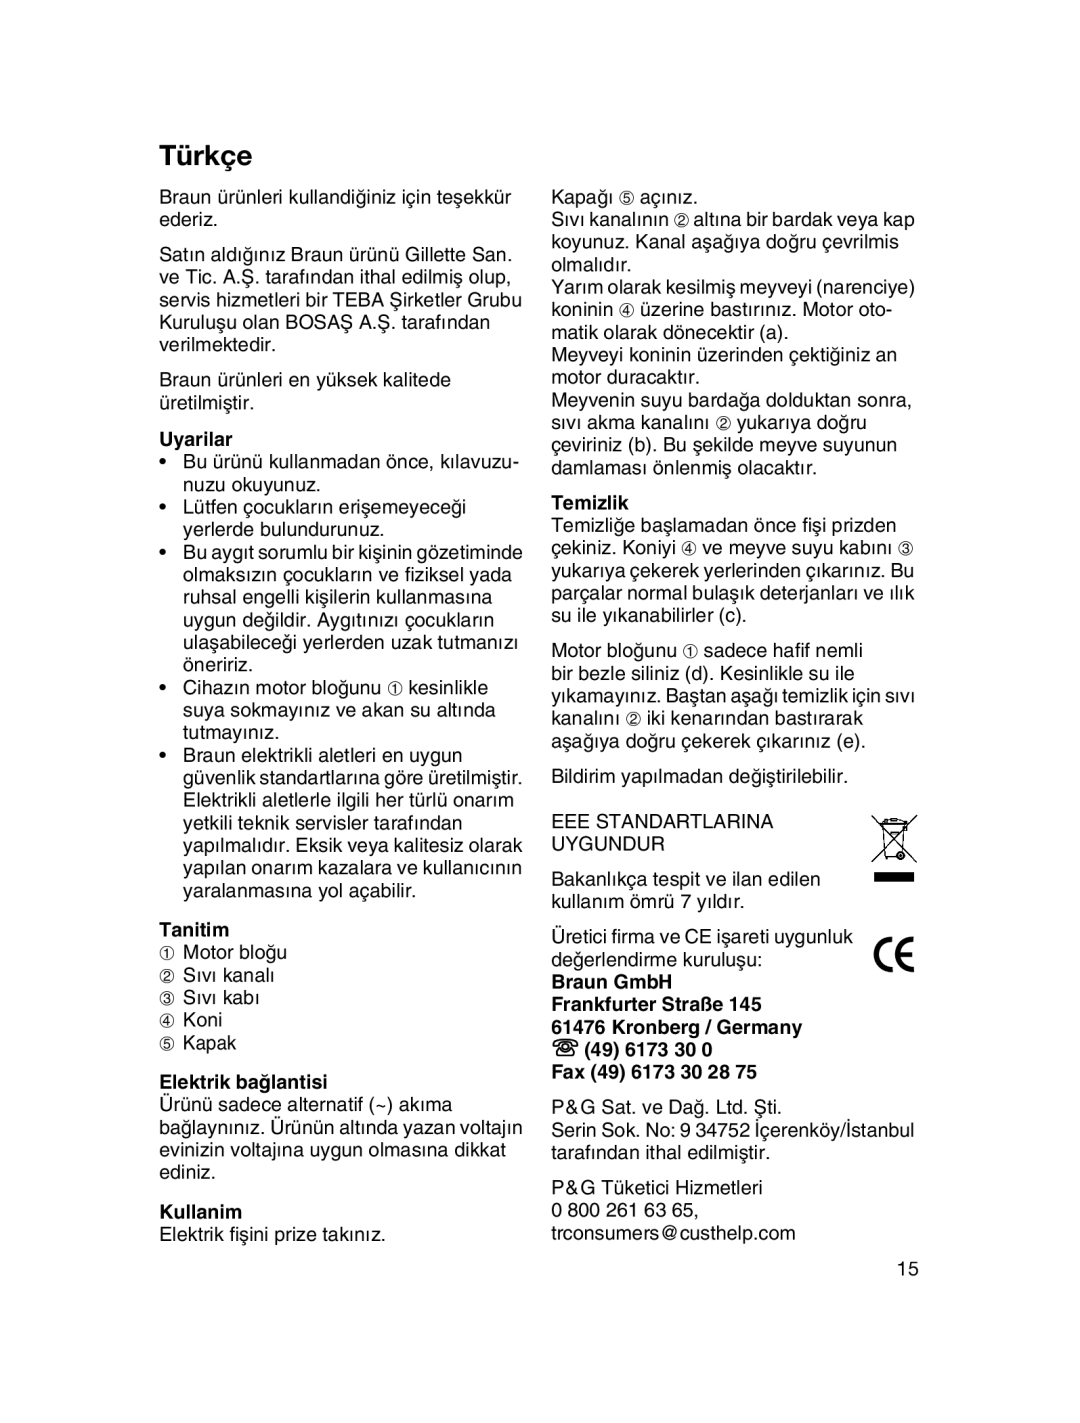 Braun MPZ 22 manual Türkçe, Uyarilar, Tanitim, Elektrik baπlantisi, Kullanim, Temizlik, “ 49 6173 30 0 Fax 49 6173 